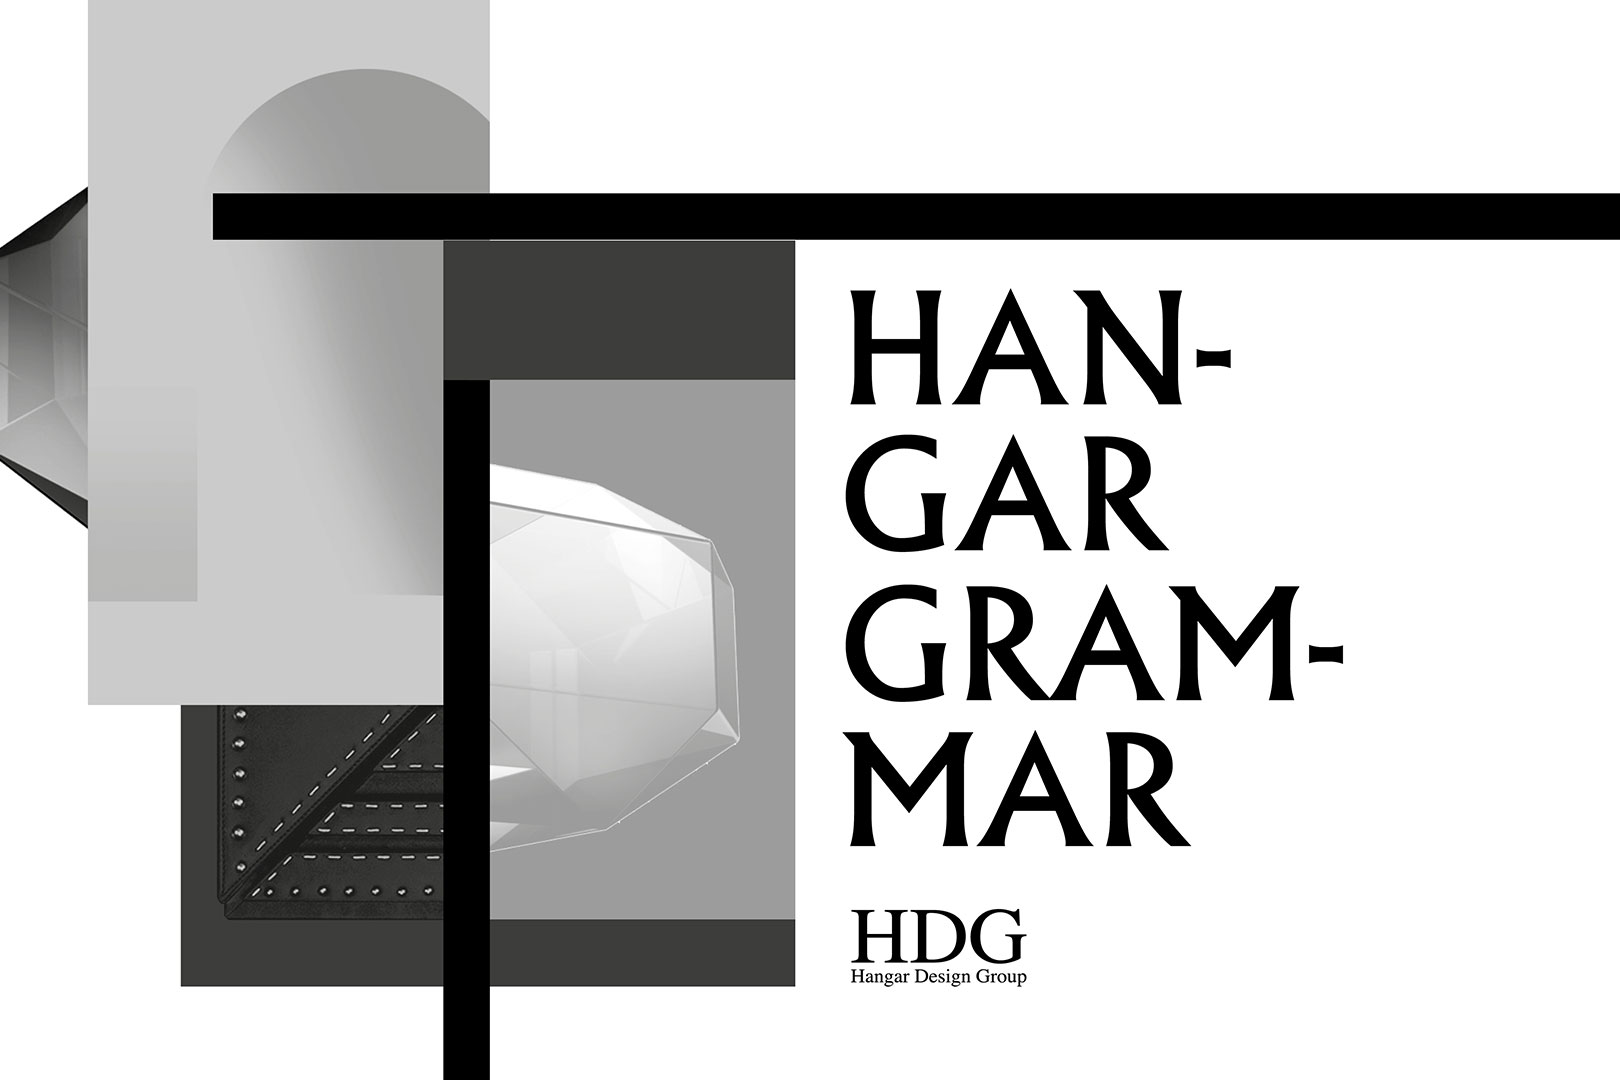 Hangar Design Group Hangar Grammar Shaping Matter